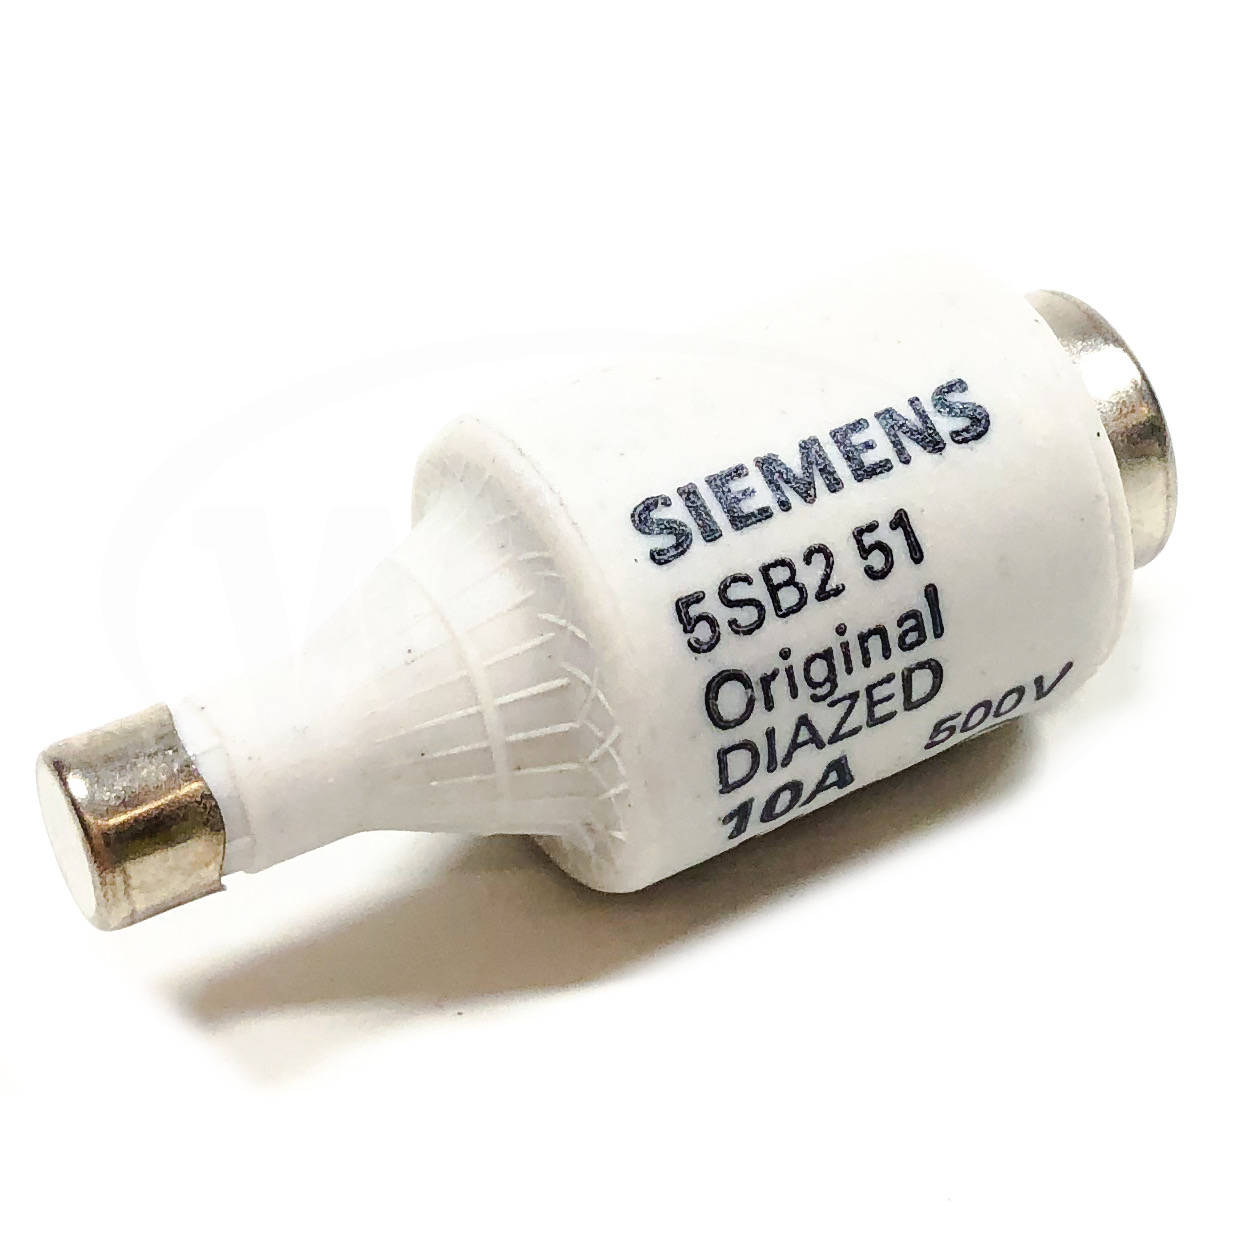 5SB251 Siemens DIAZED Fuse Link, 10 Amps, 500V 2